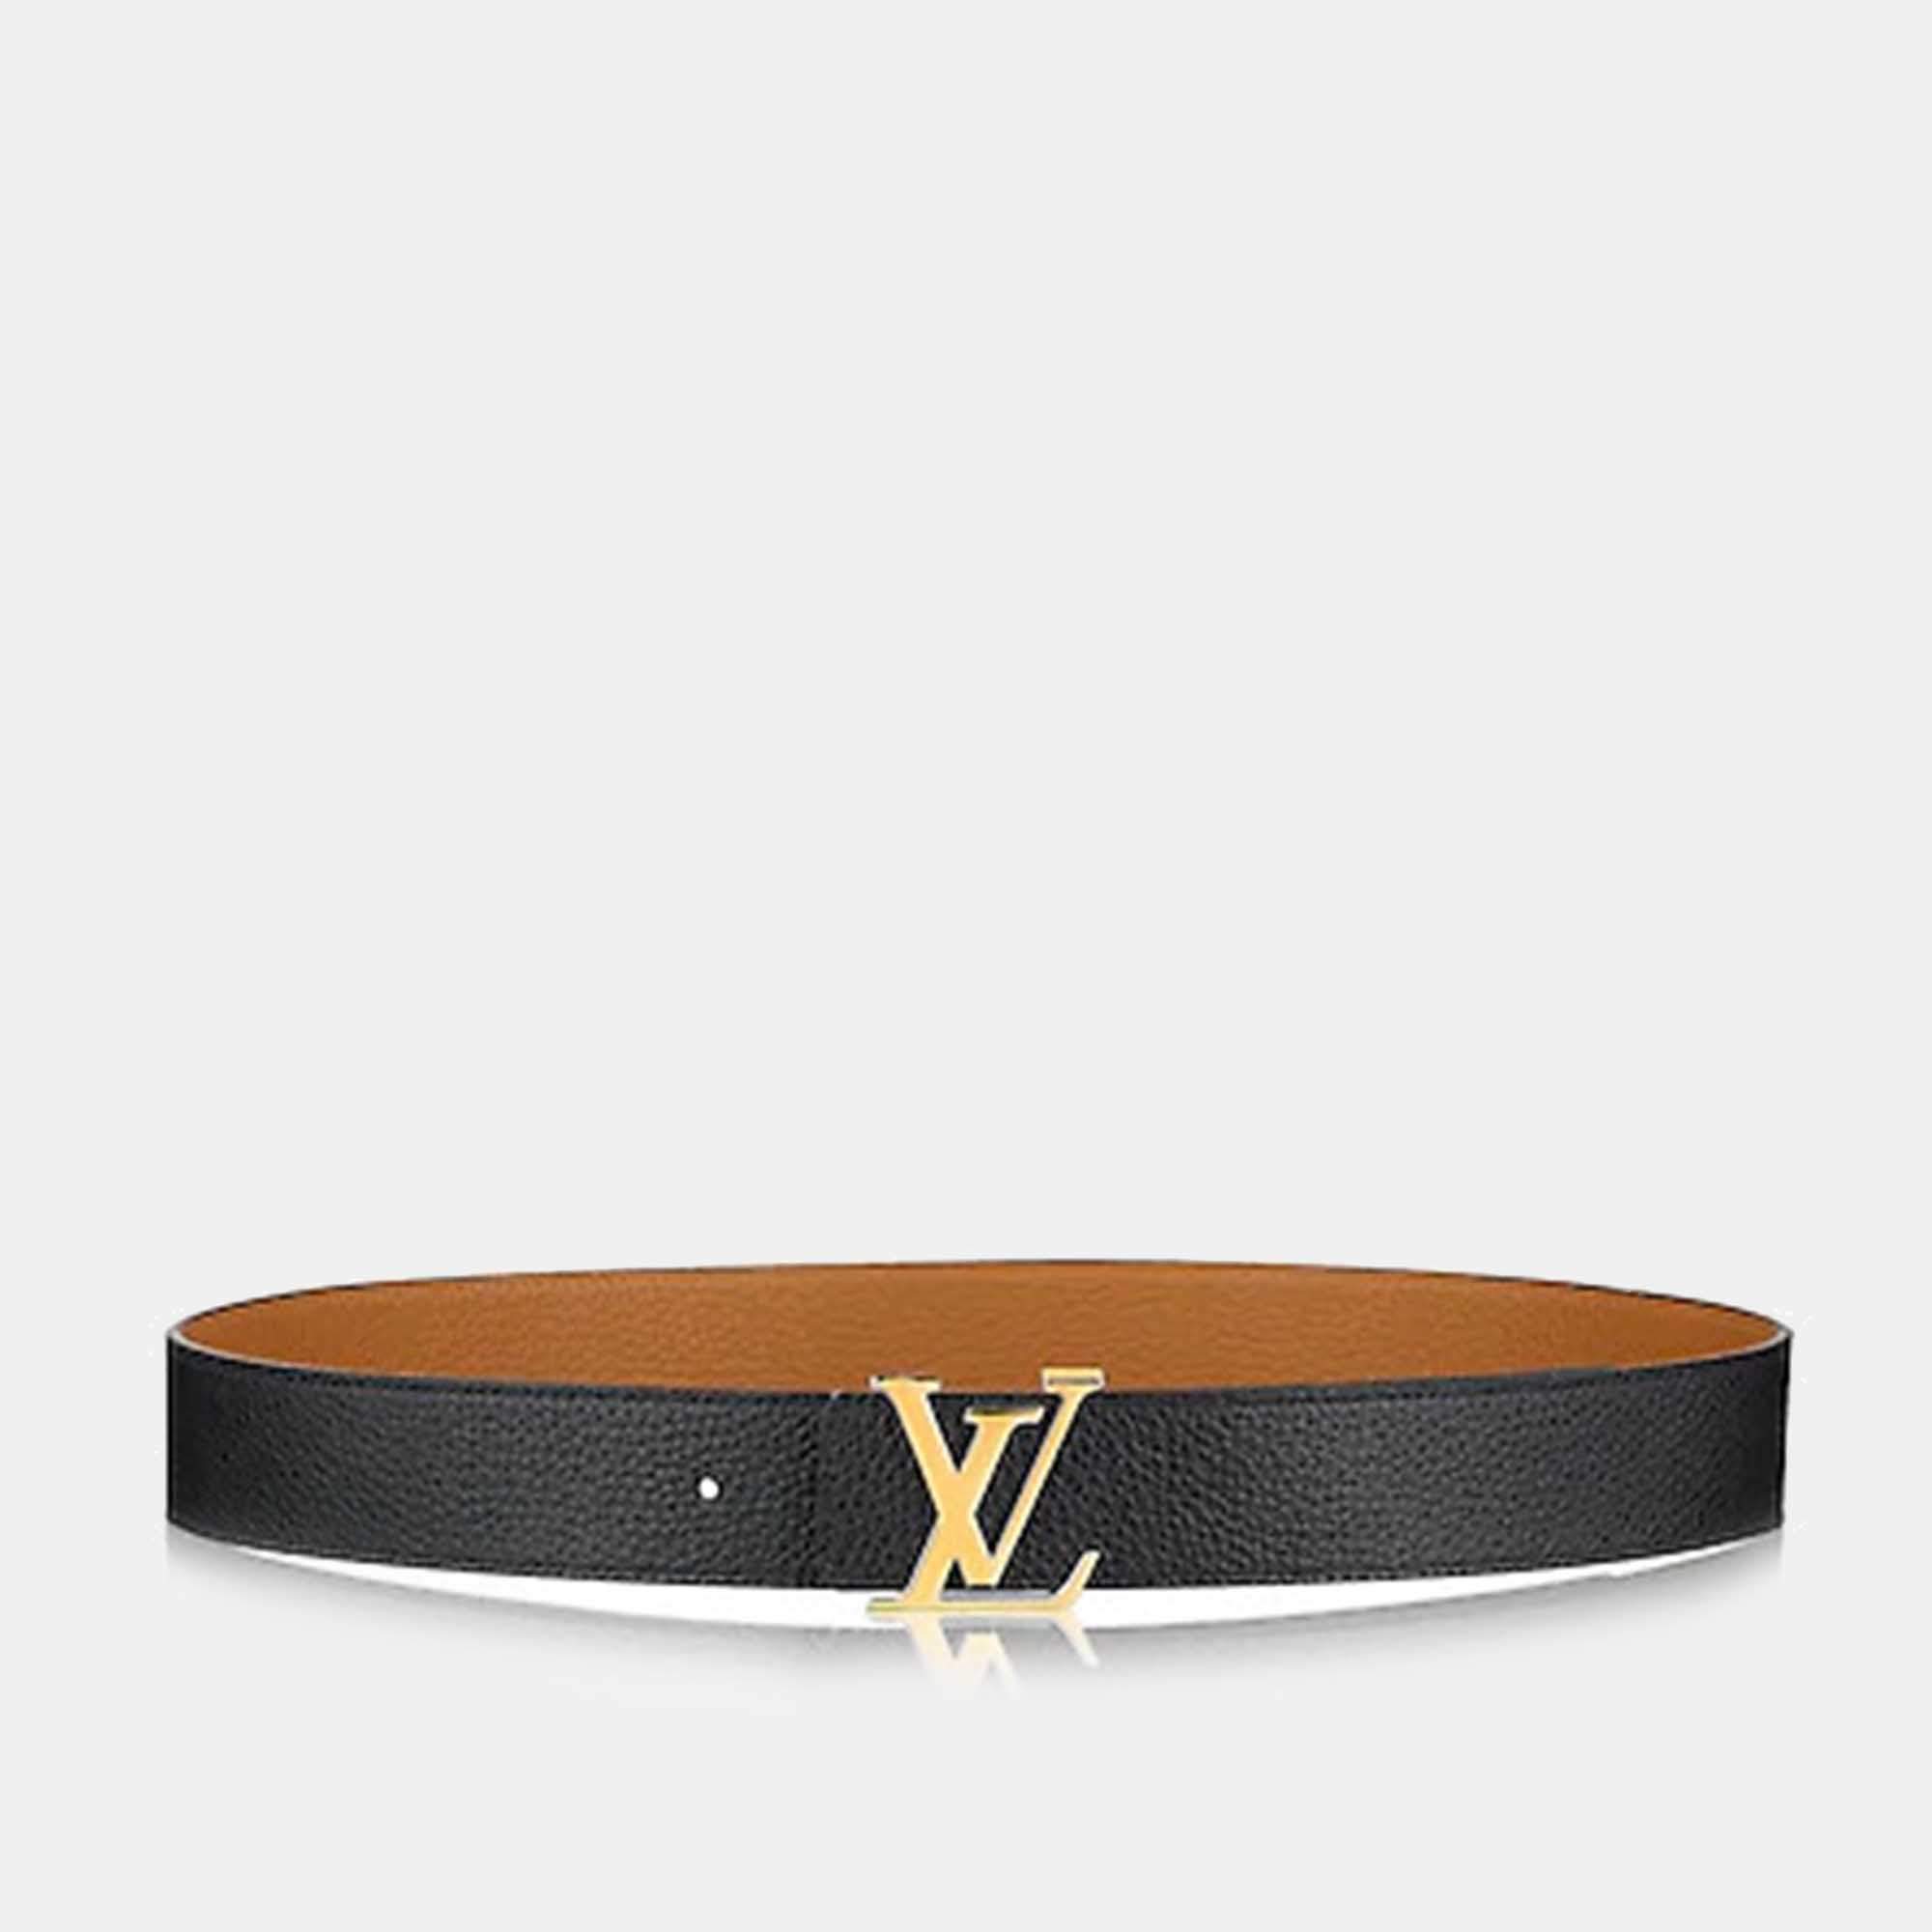 LV belt under 900 #wiseboywear #fyp